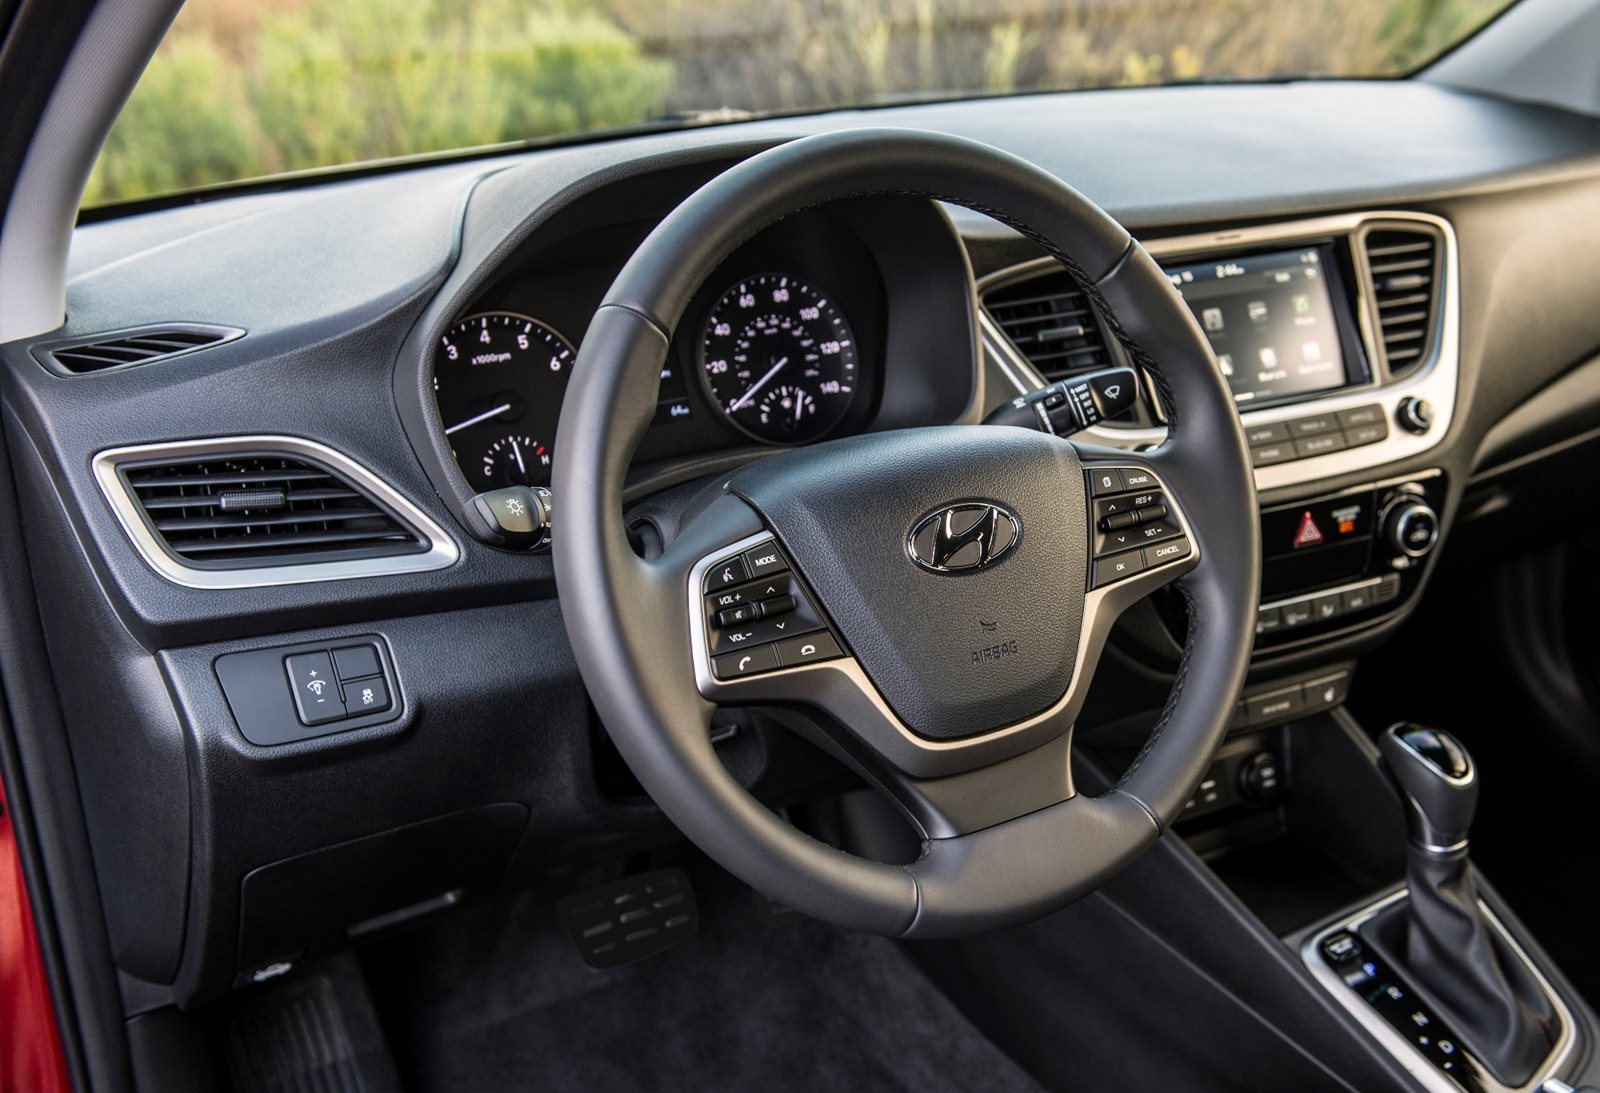 2019 Hyundai Accent Interior Photos | CarBuzz